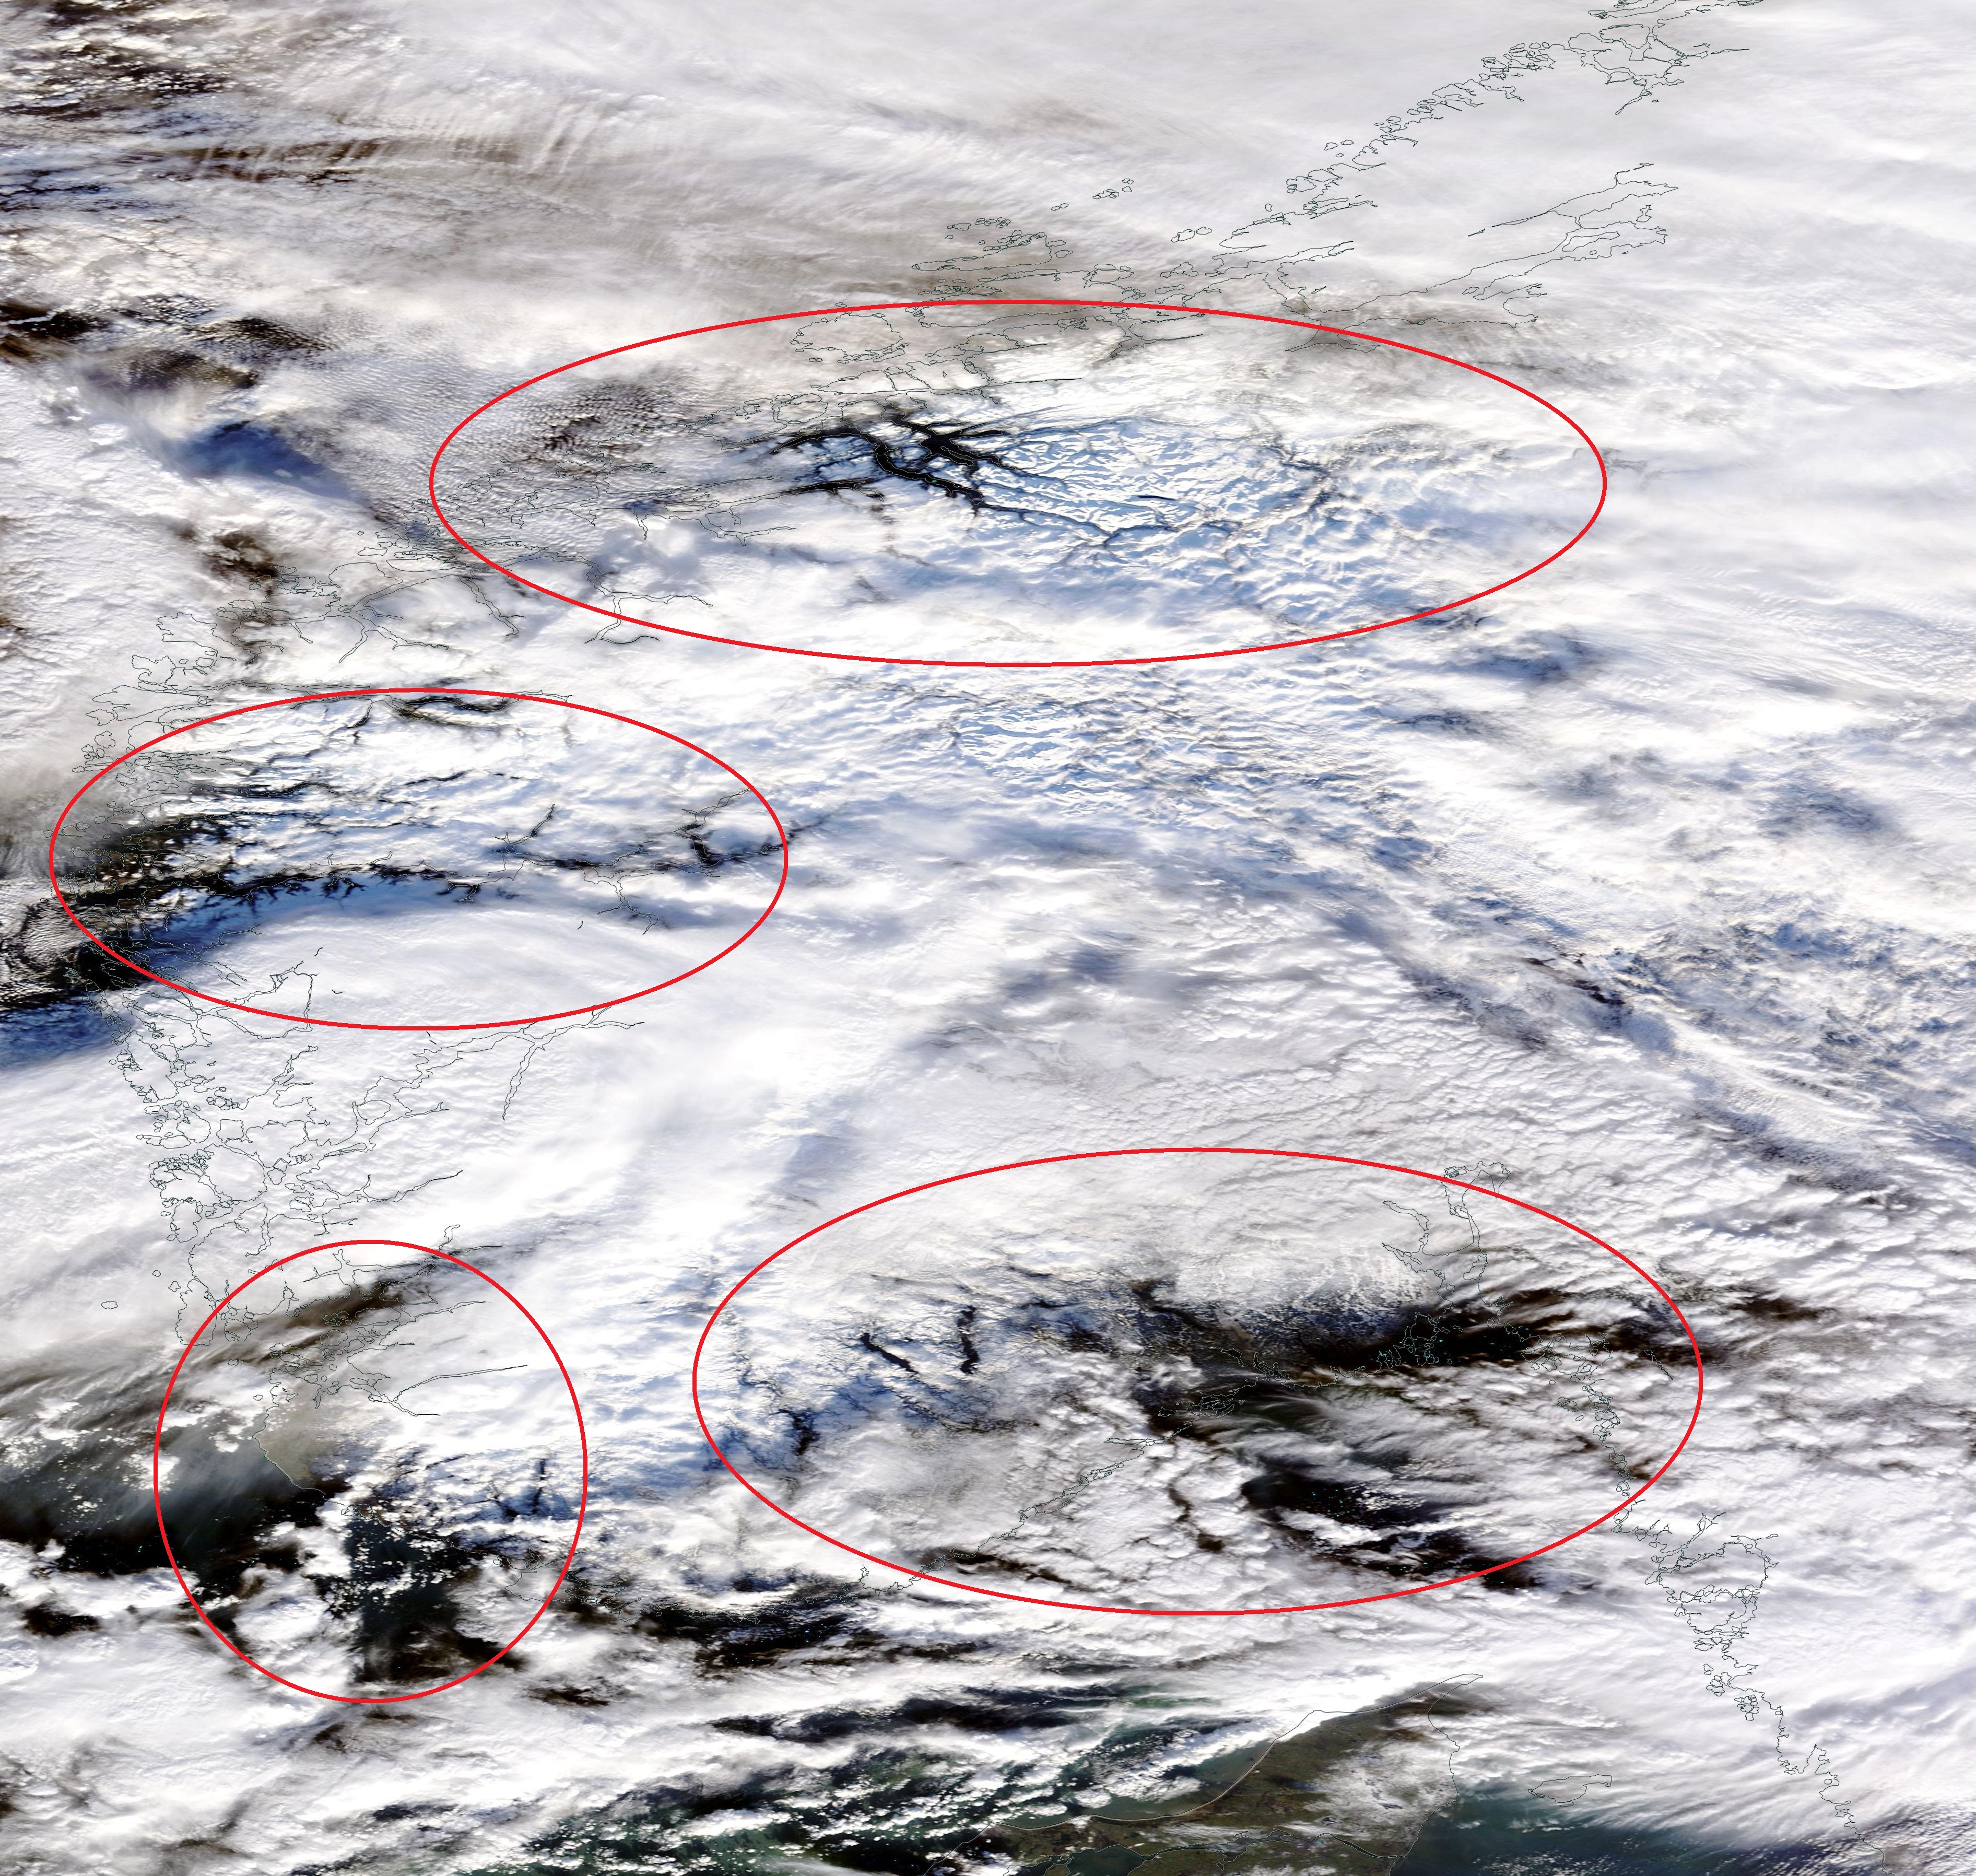 snow-scandinavia-visible-from-nasa-sat-29jan